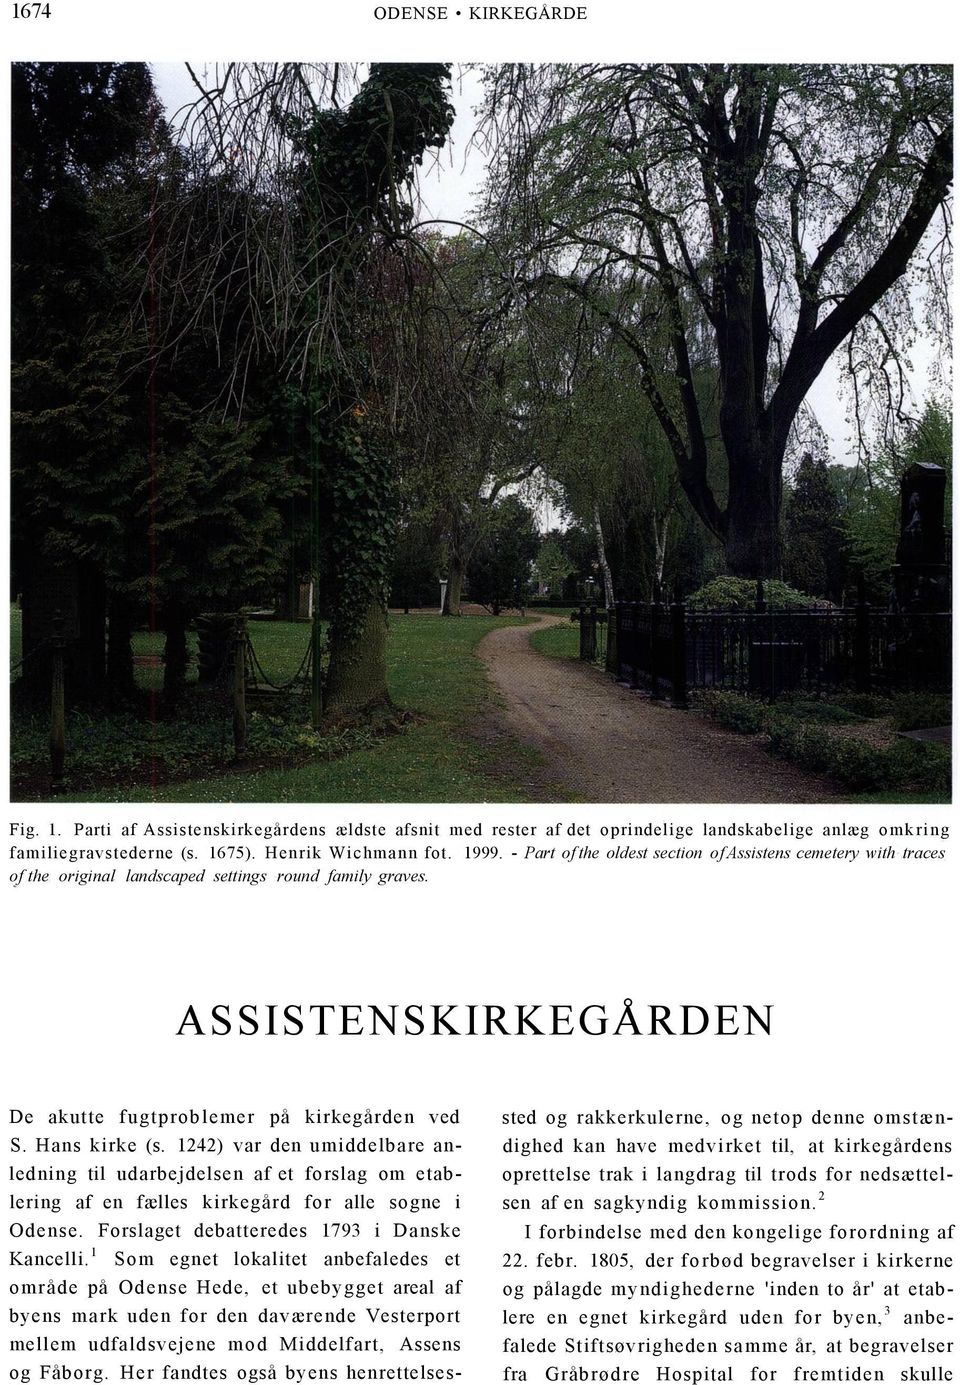 Hans kirke (s. 1242) var den umiddelbare anledning til udarbejdelsen af et forslag om etablering af en fælles kirkegård for alle sogne i Odense. Forslaget debatteredes 1793 i Danske Kancelli.